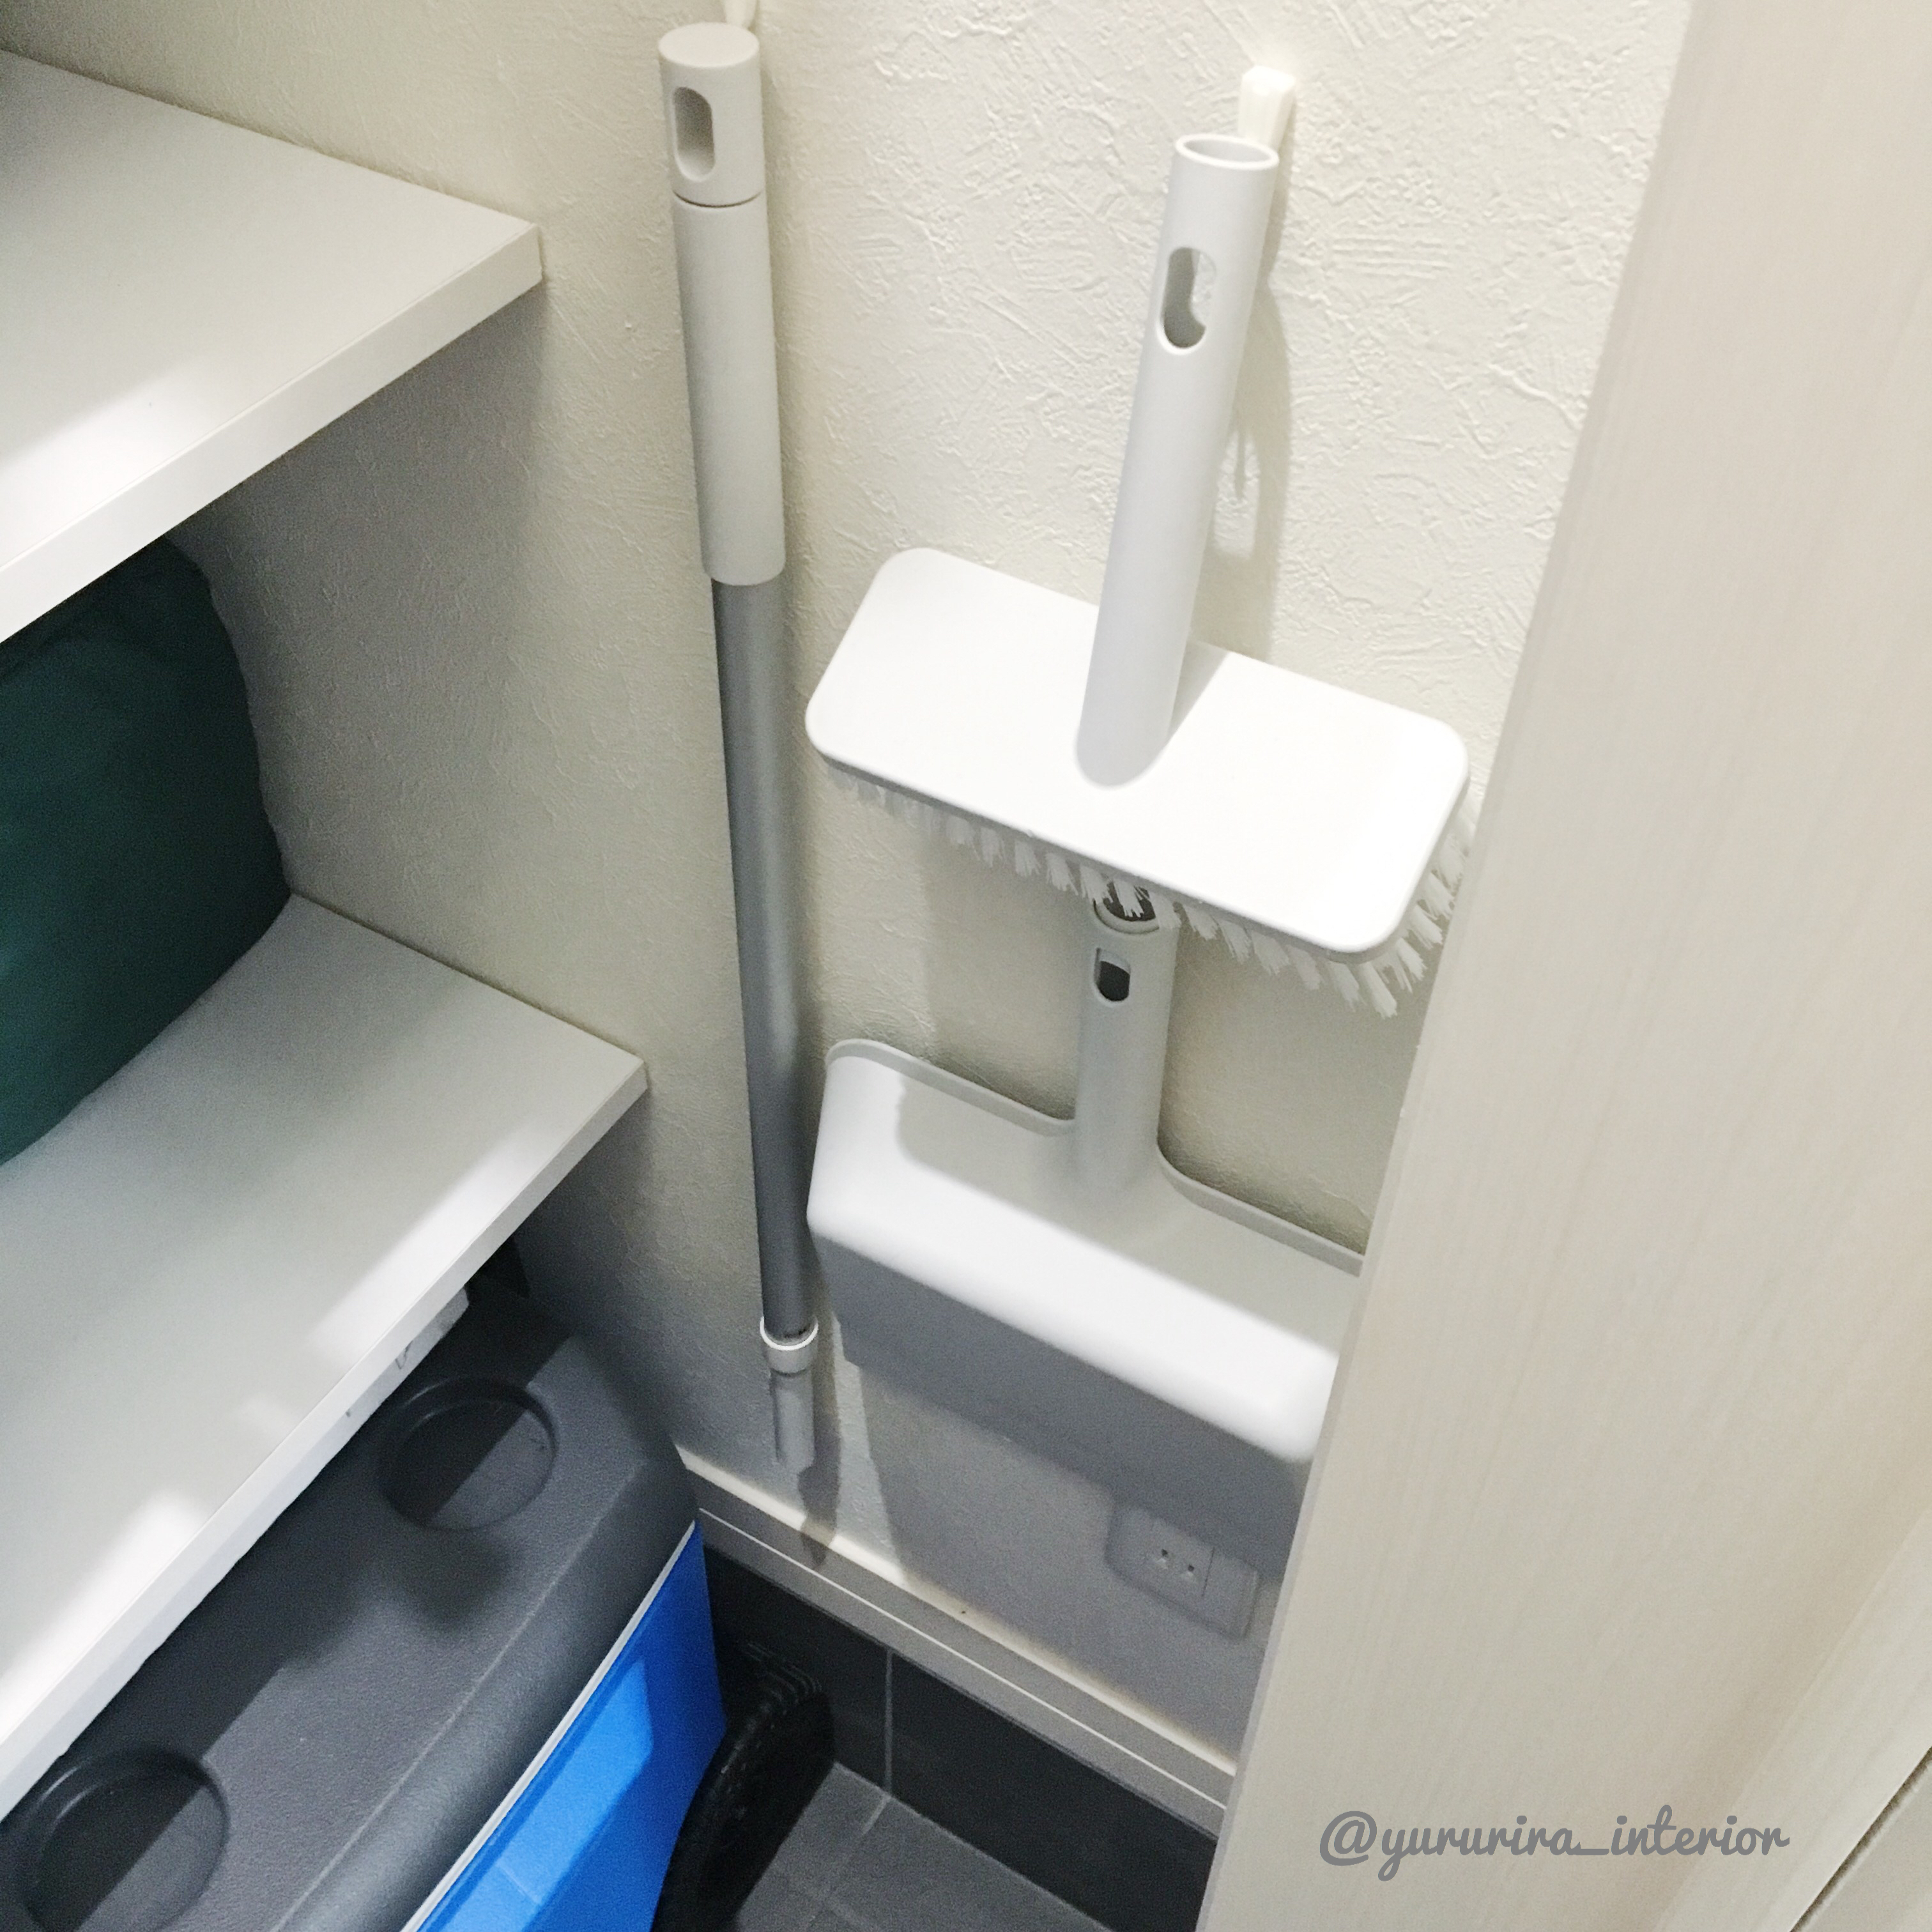 100均アイテムで 玄関用の無印掃除アイテムを壁掛け収納 Yururira S Interior Blog